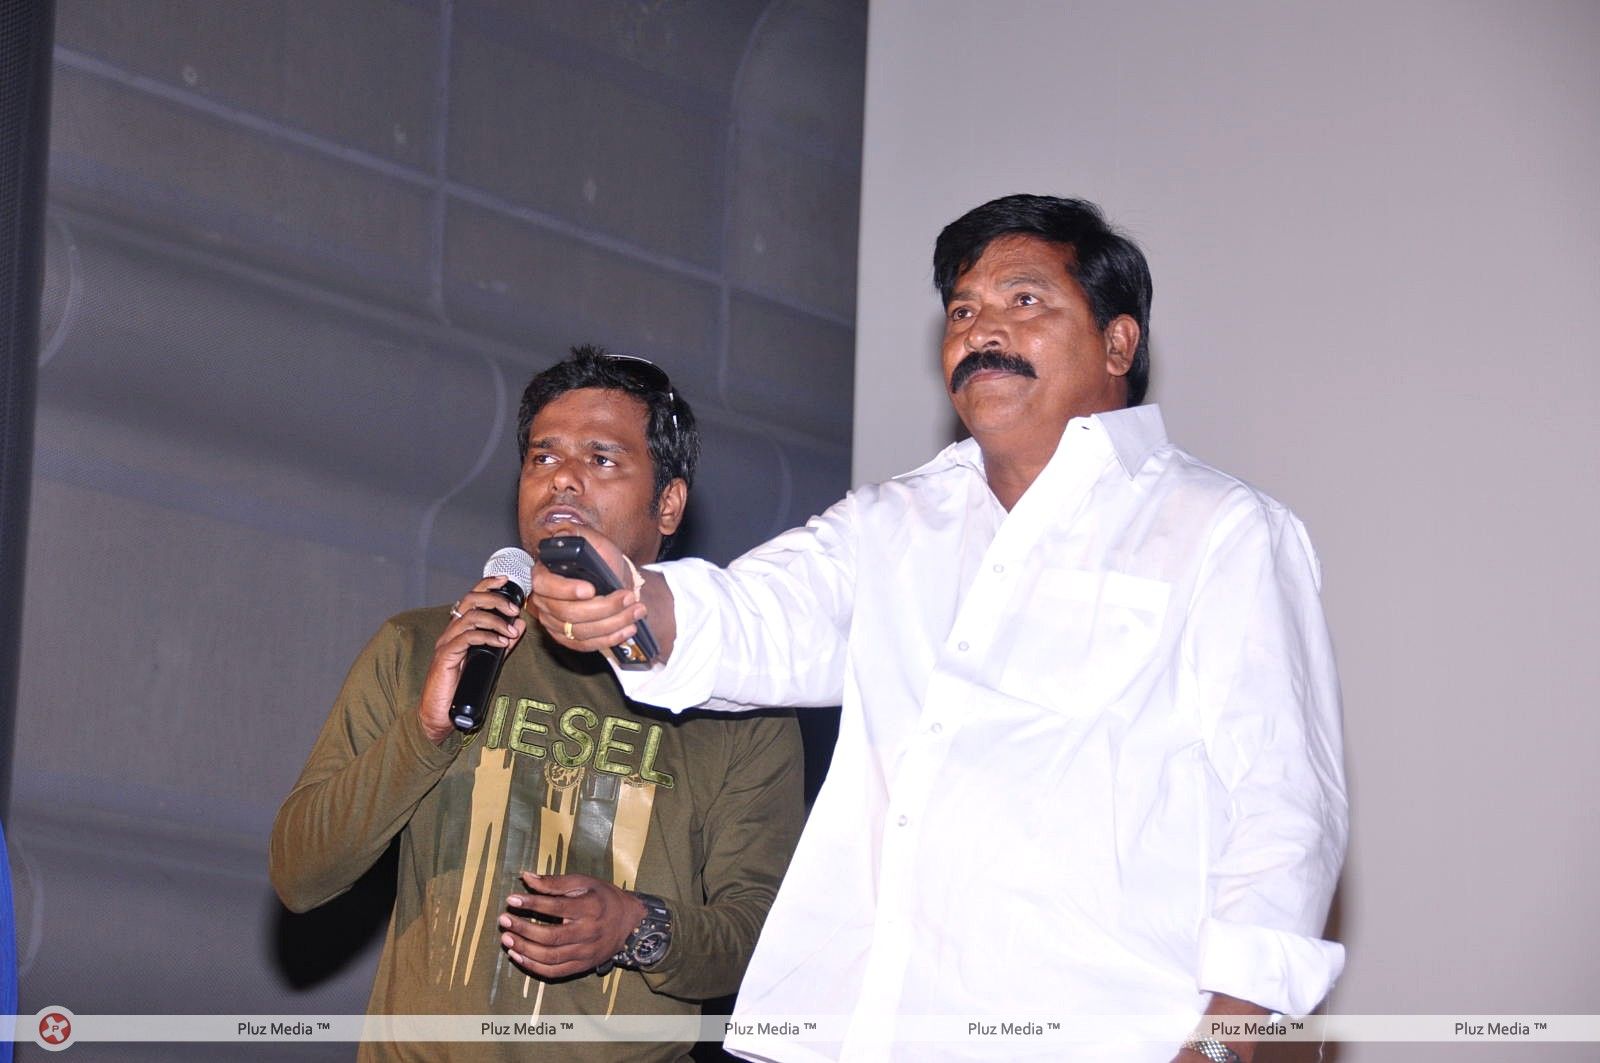 Gurudu Movie Audio Launch Photos | Picture 306966